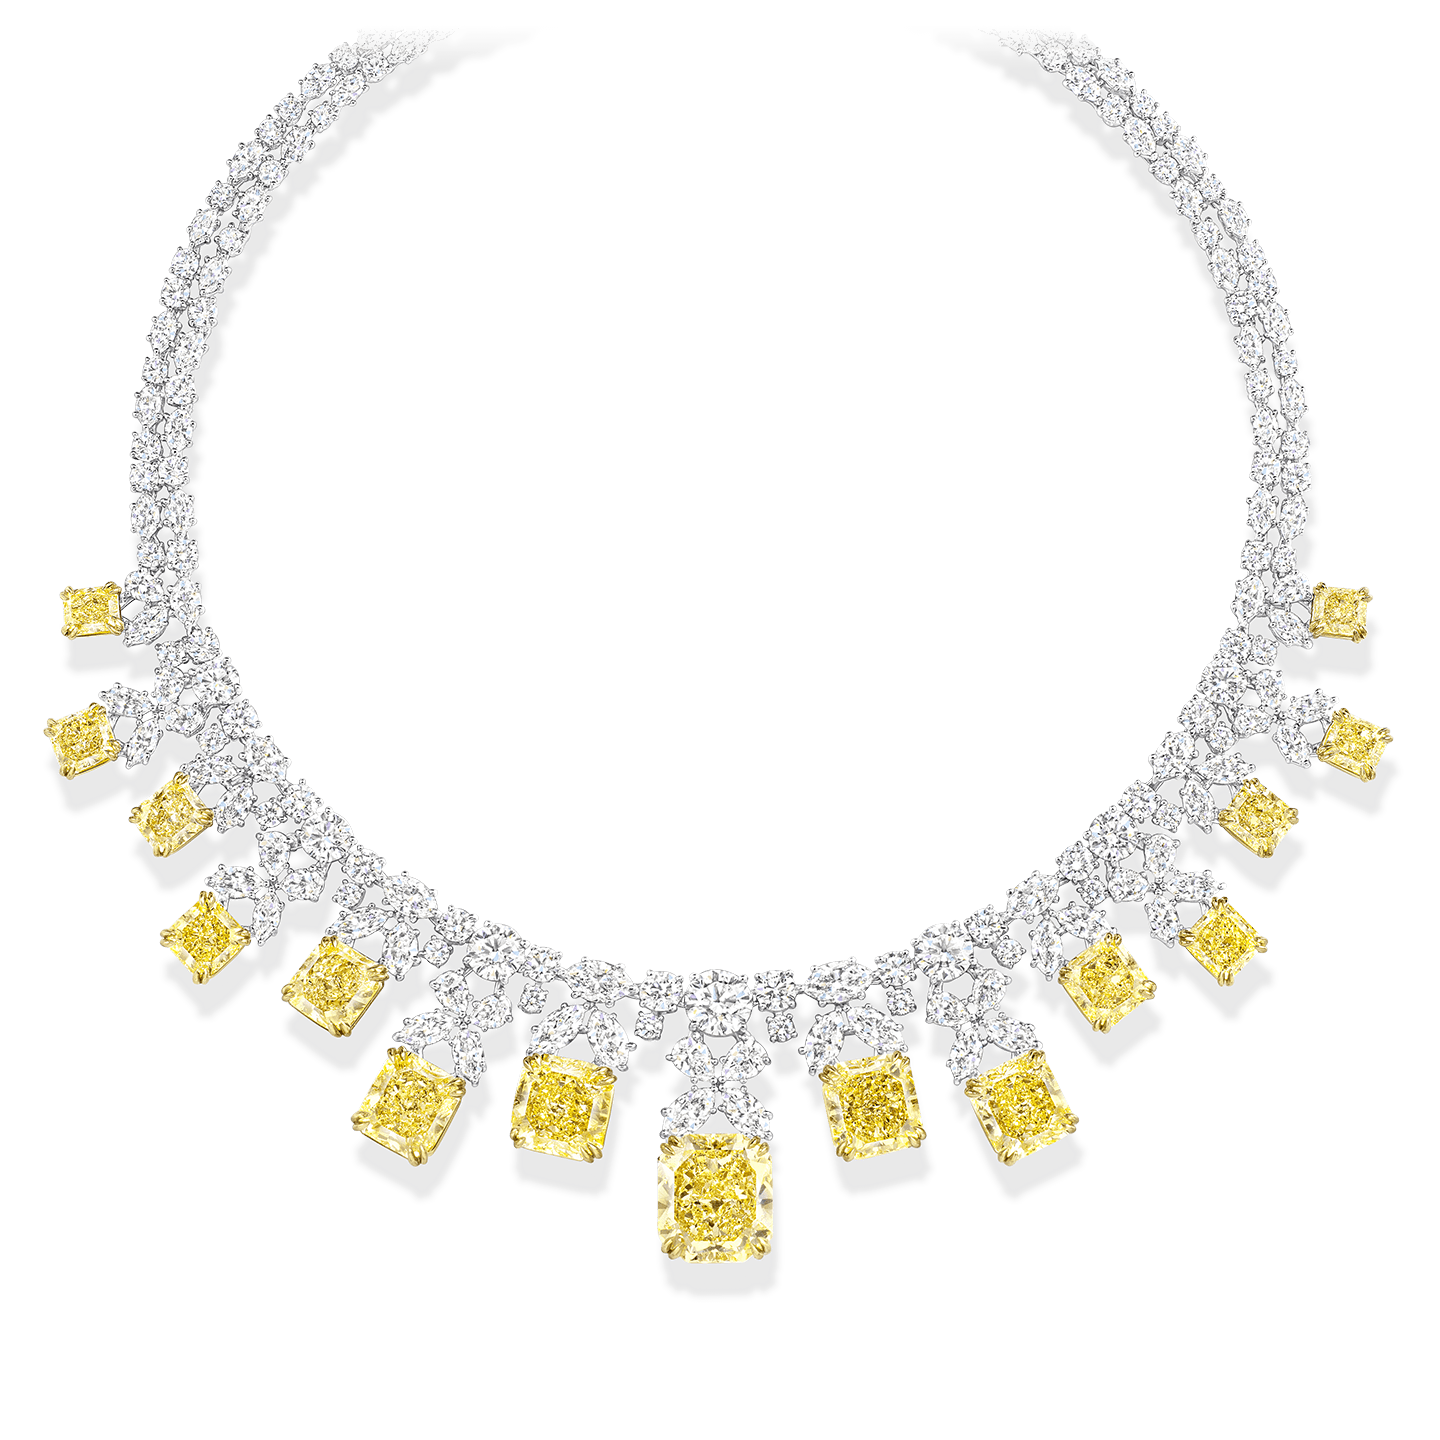 Fancy diamonds necklace by Diva161 on DeviantArt